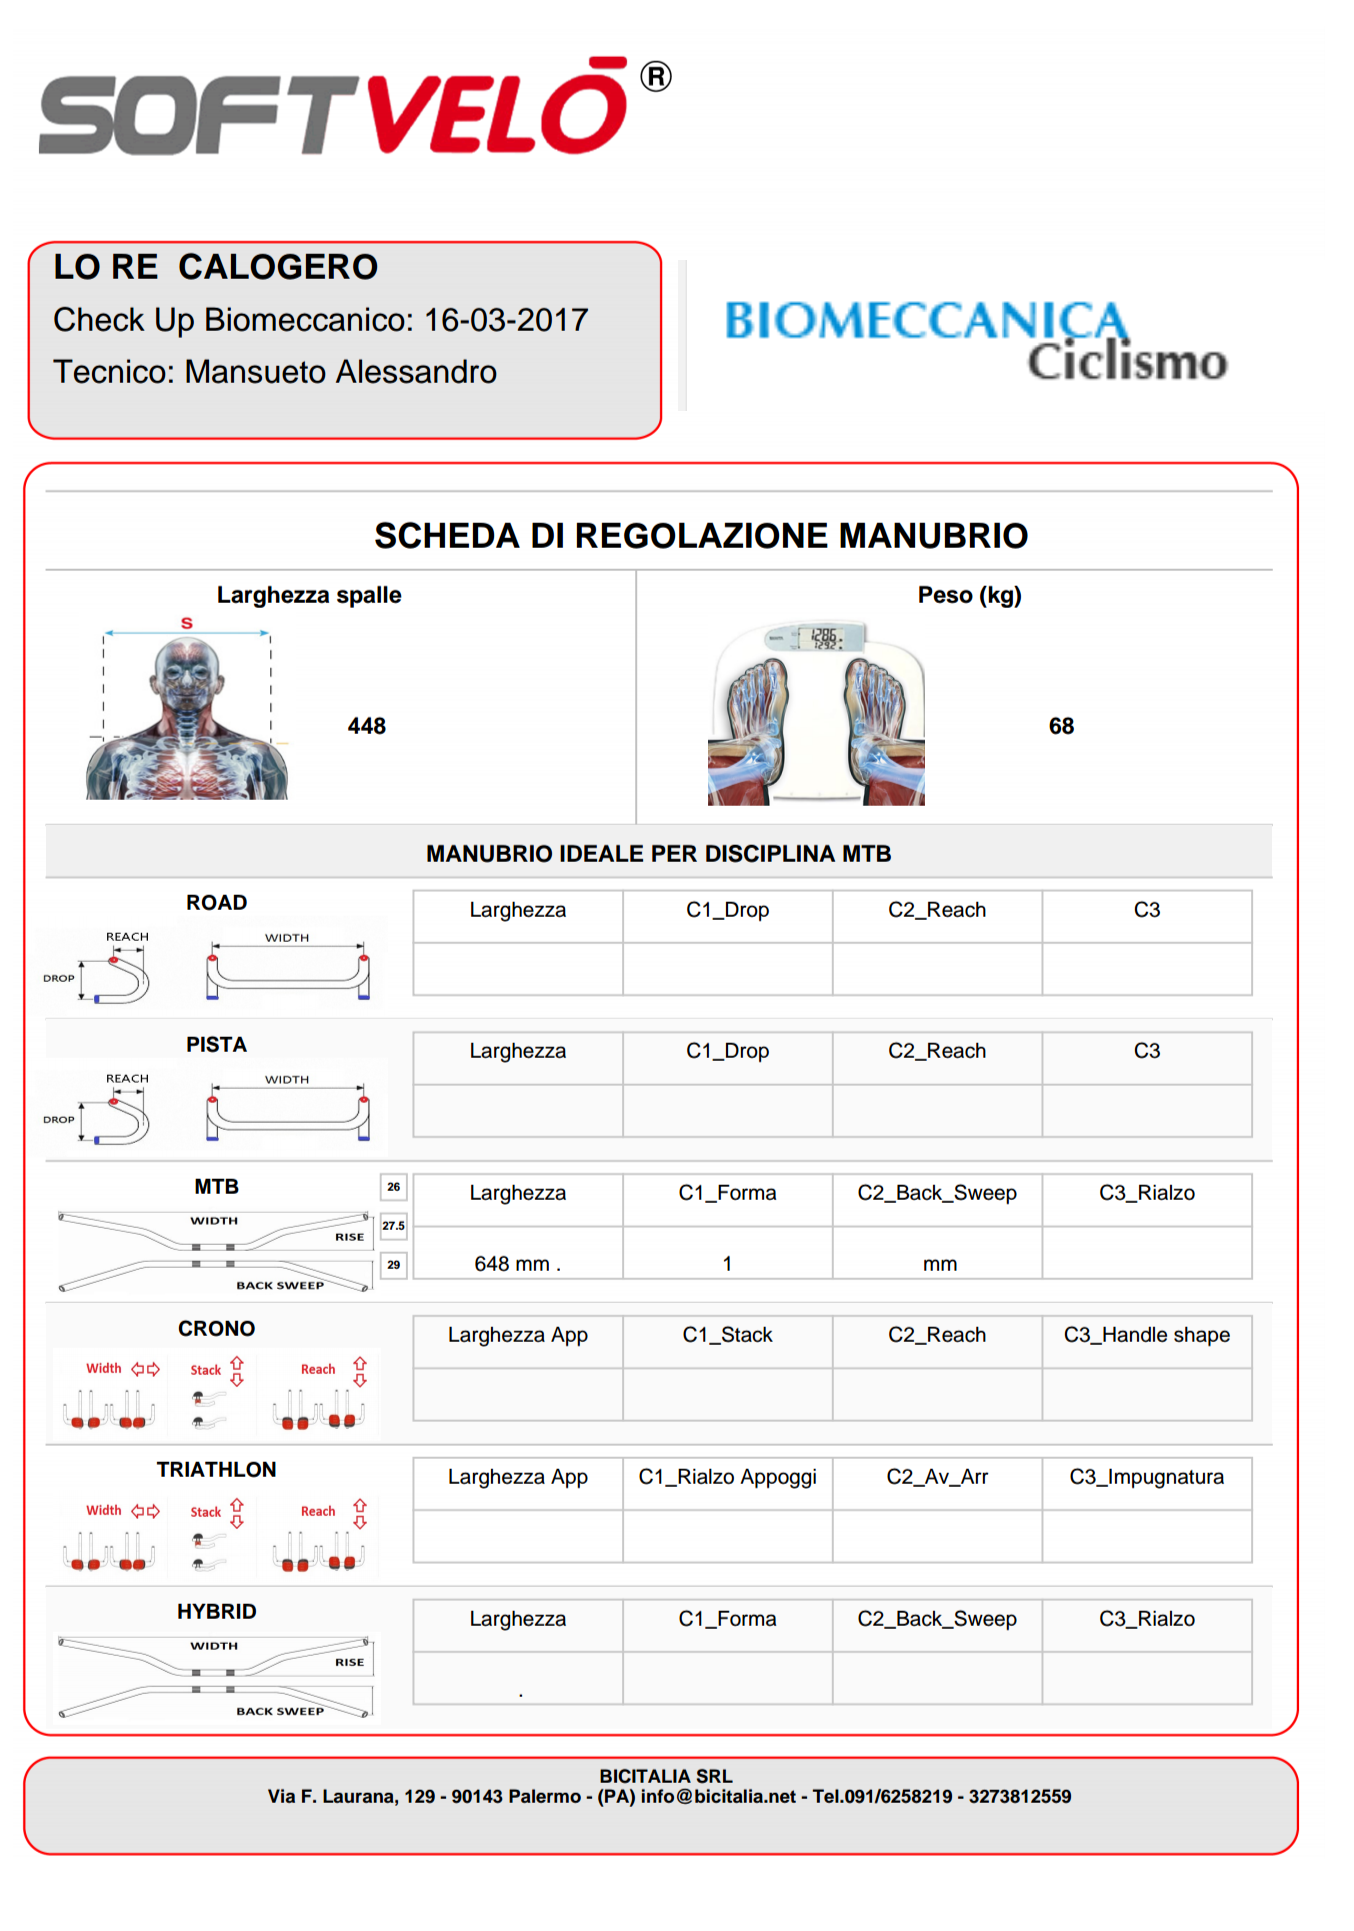 Valutazione biomeccanica biker Calogero Lo Re